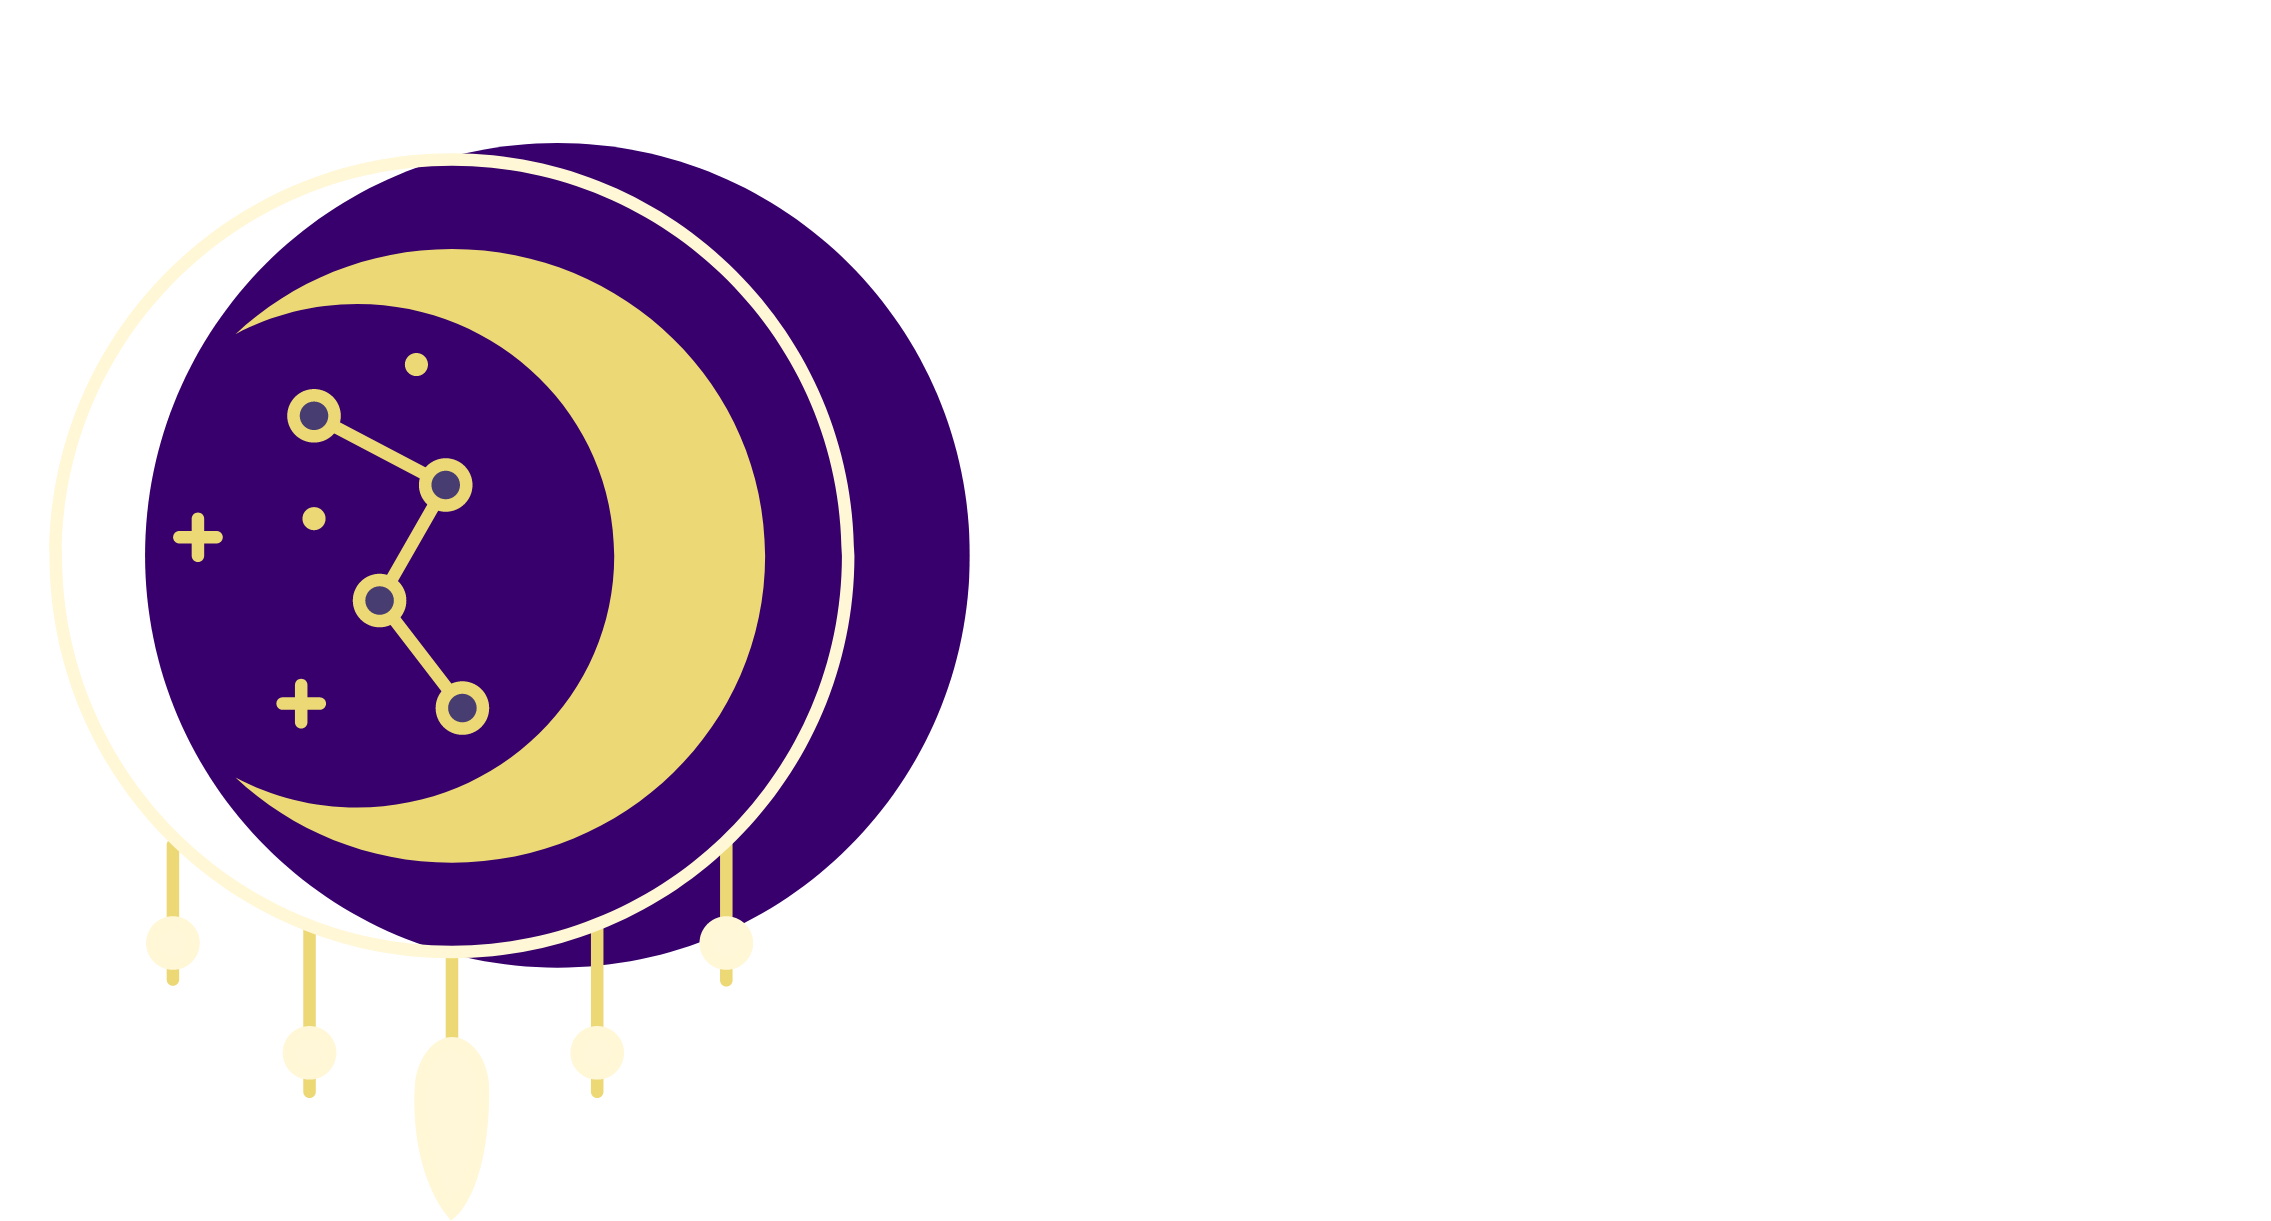 PICHORO